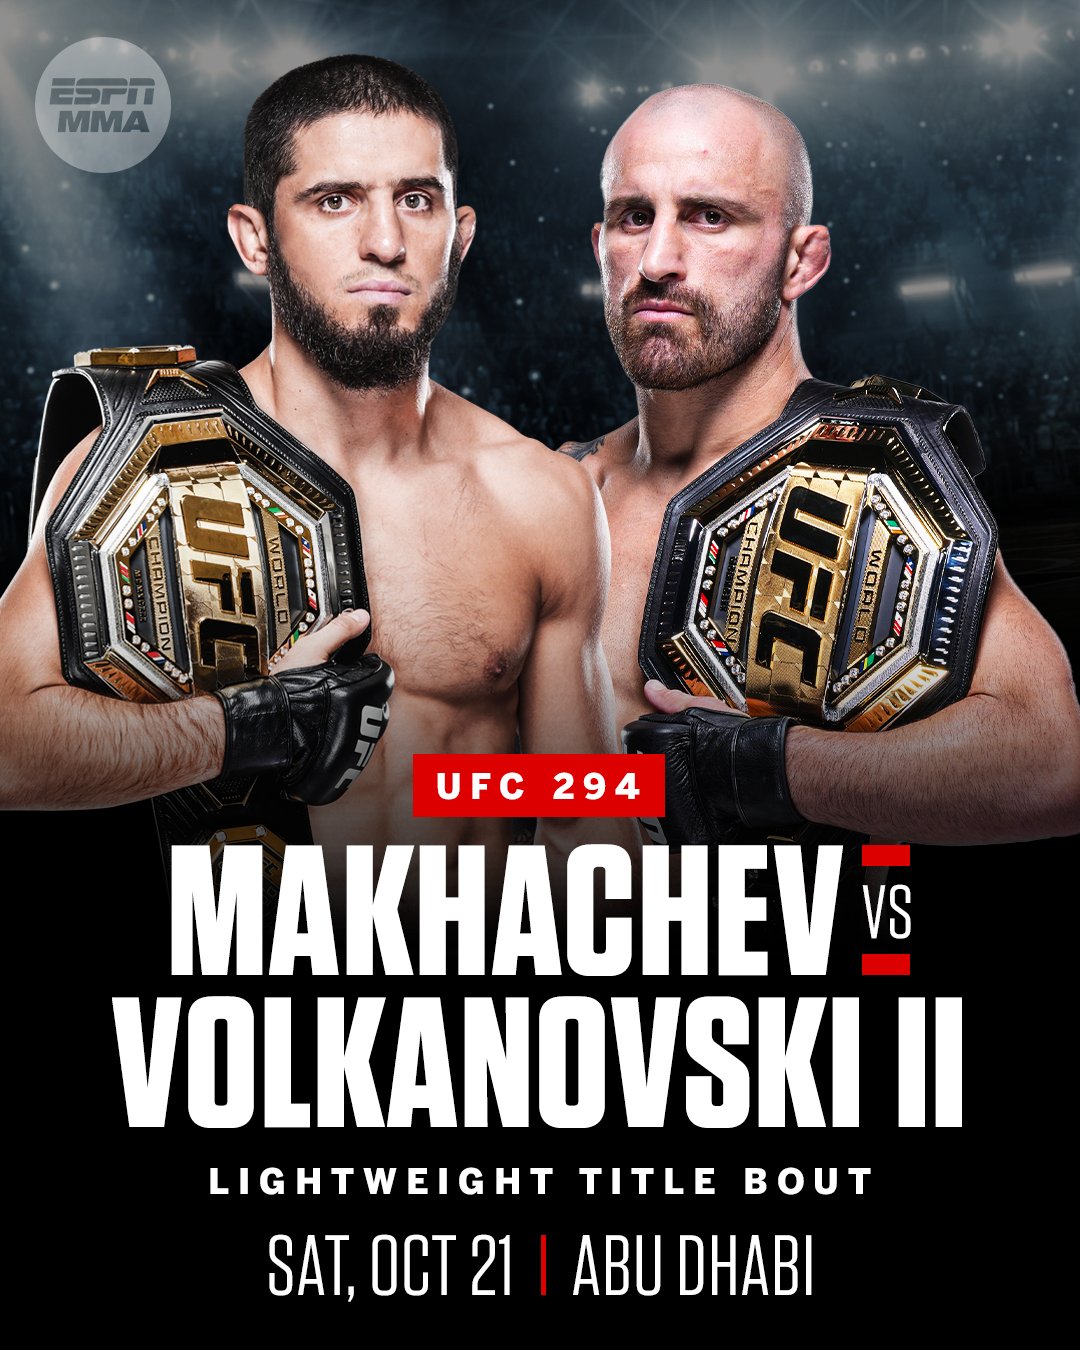 Volkanovski vs makhachev 2